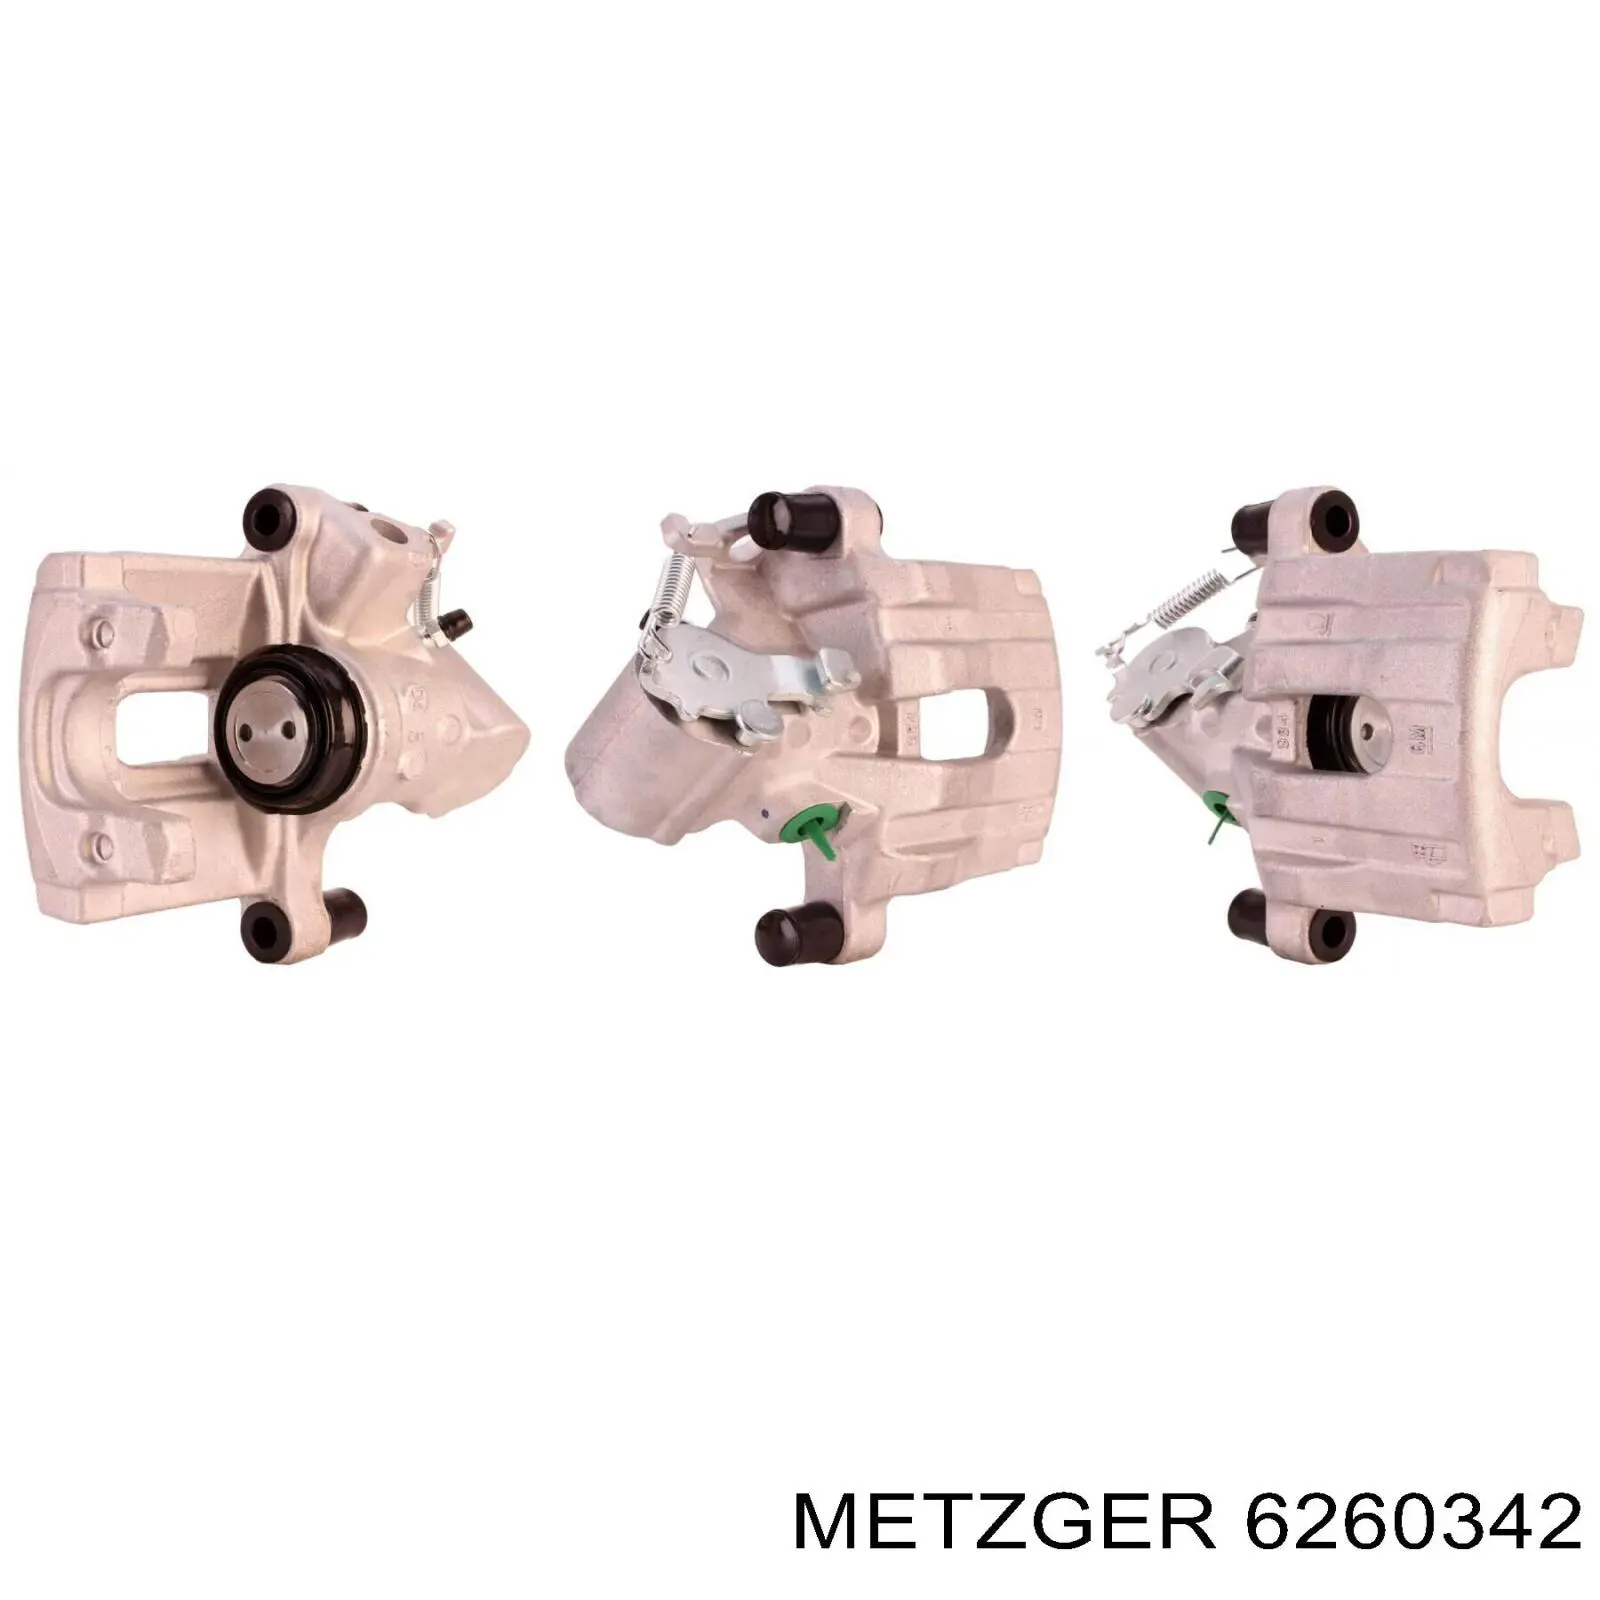 6260342 Metzger суппорт тормозной задний правый